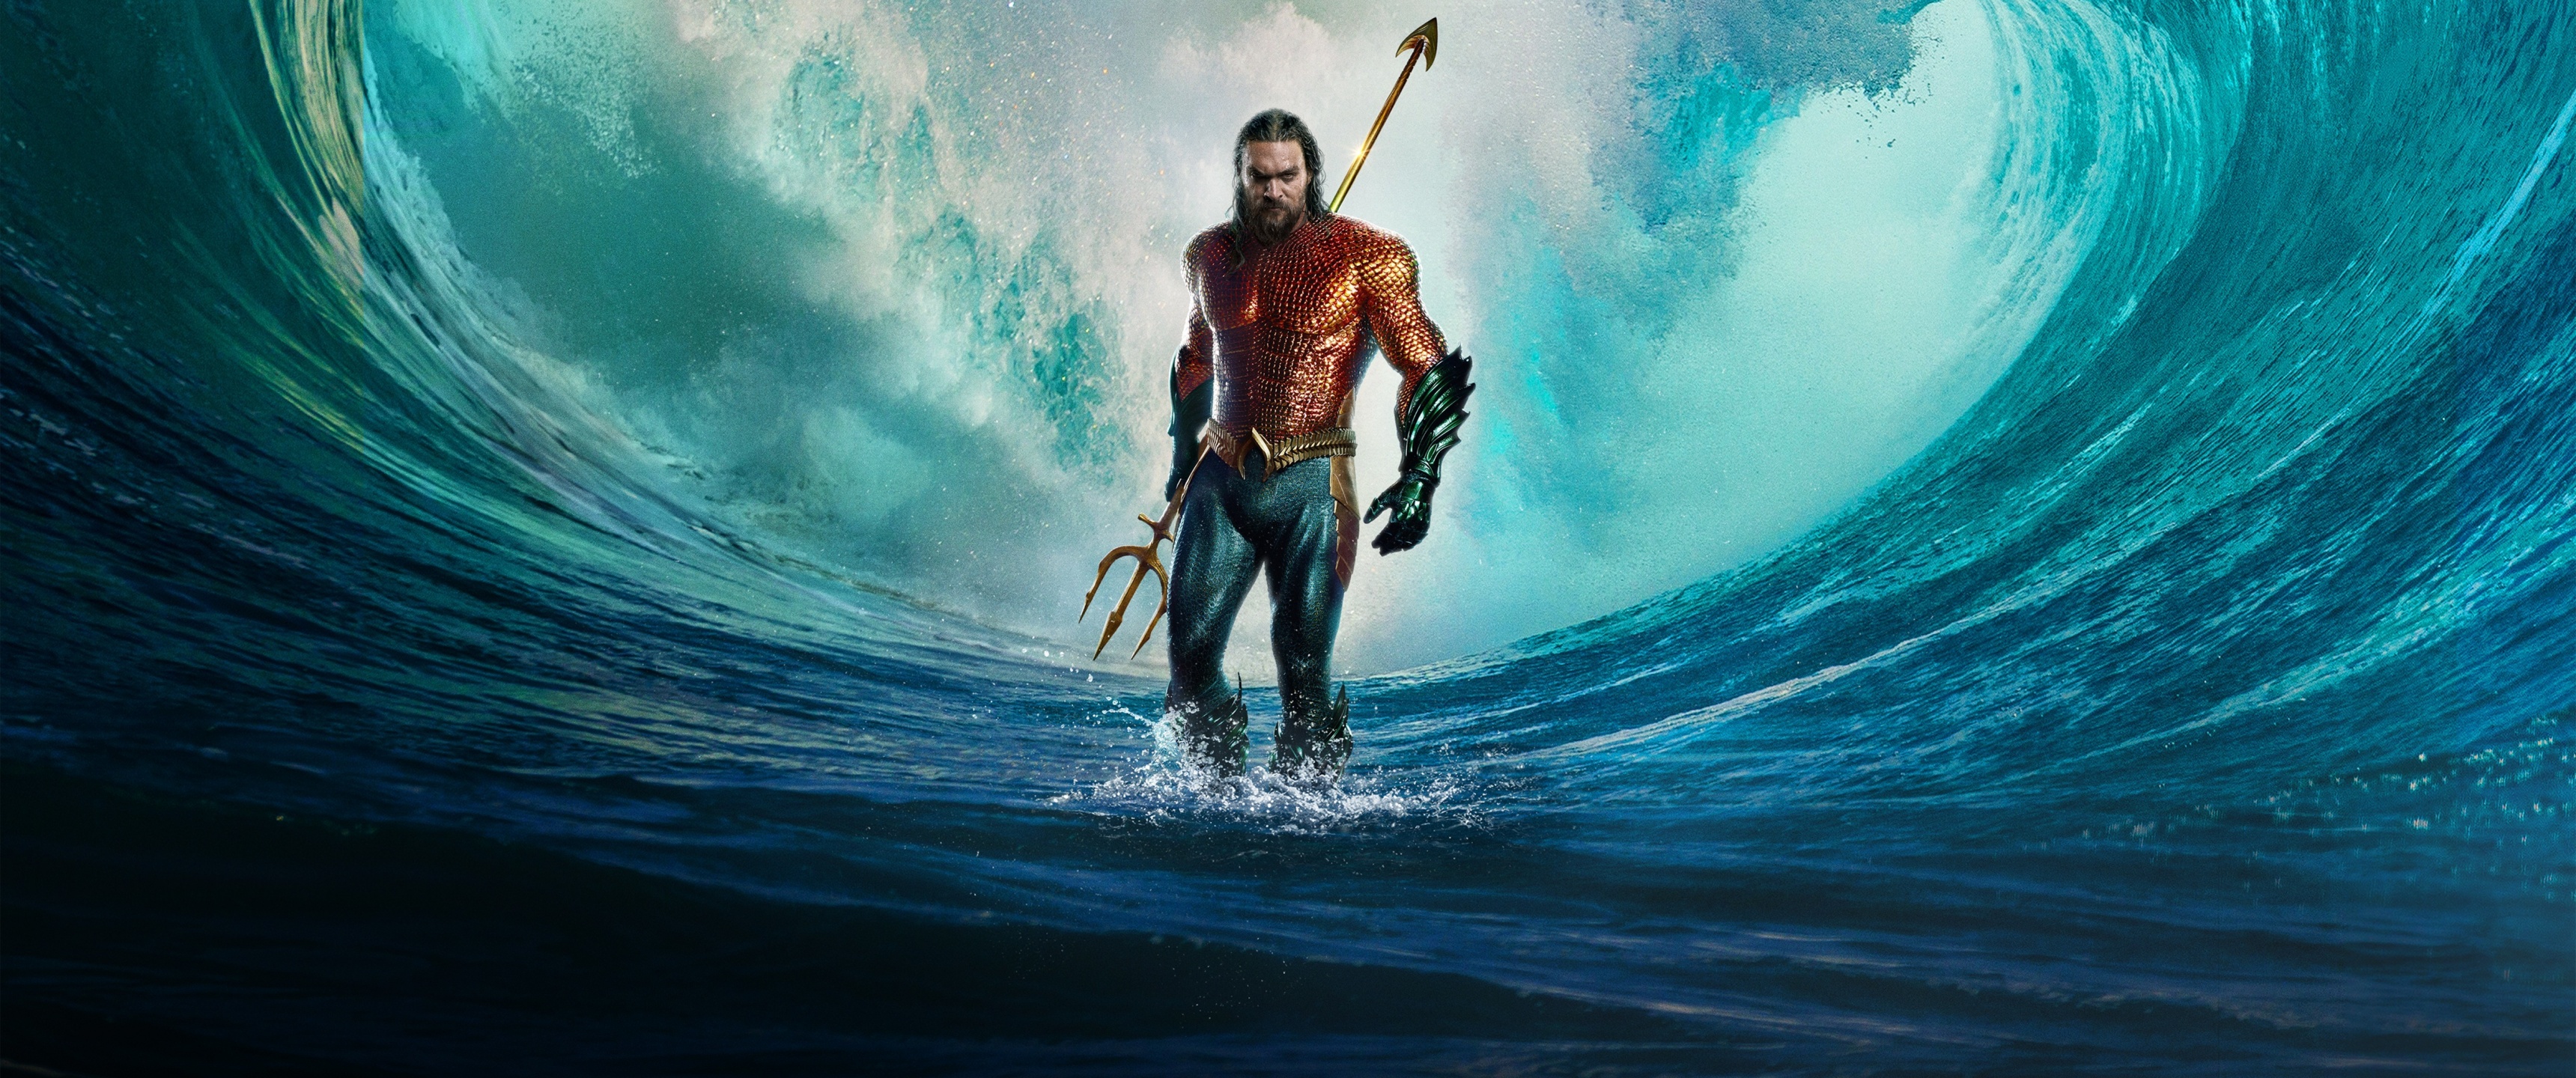 Aquaman and the Lost Kingdom Wallpaper 4K, 2023 Movies, DC Comics